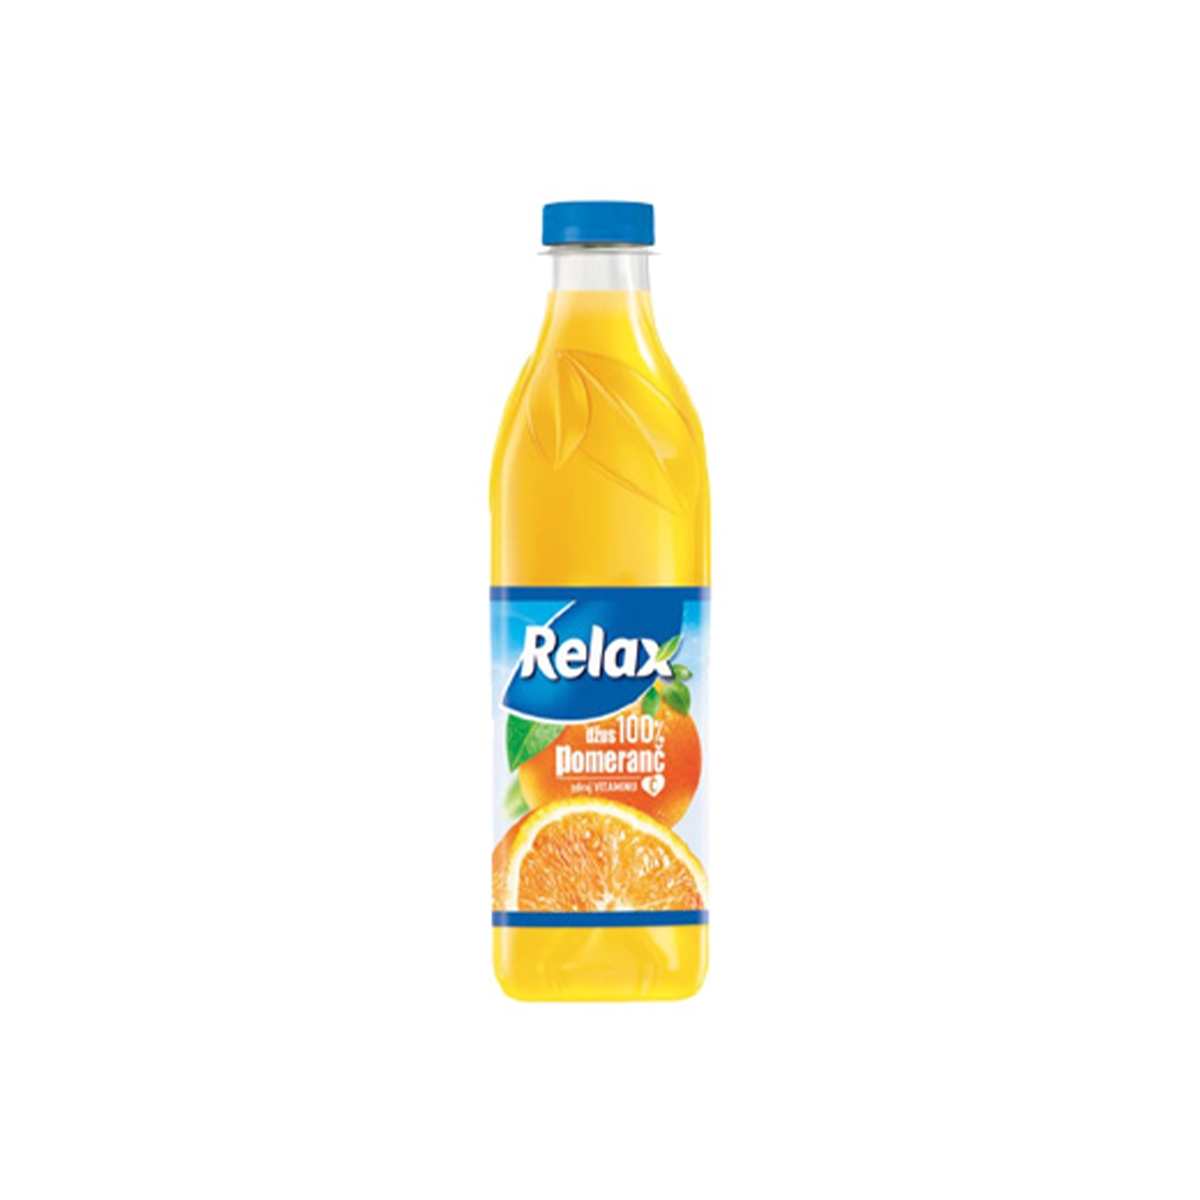 Relax pomeranč 100% 1 l